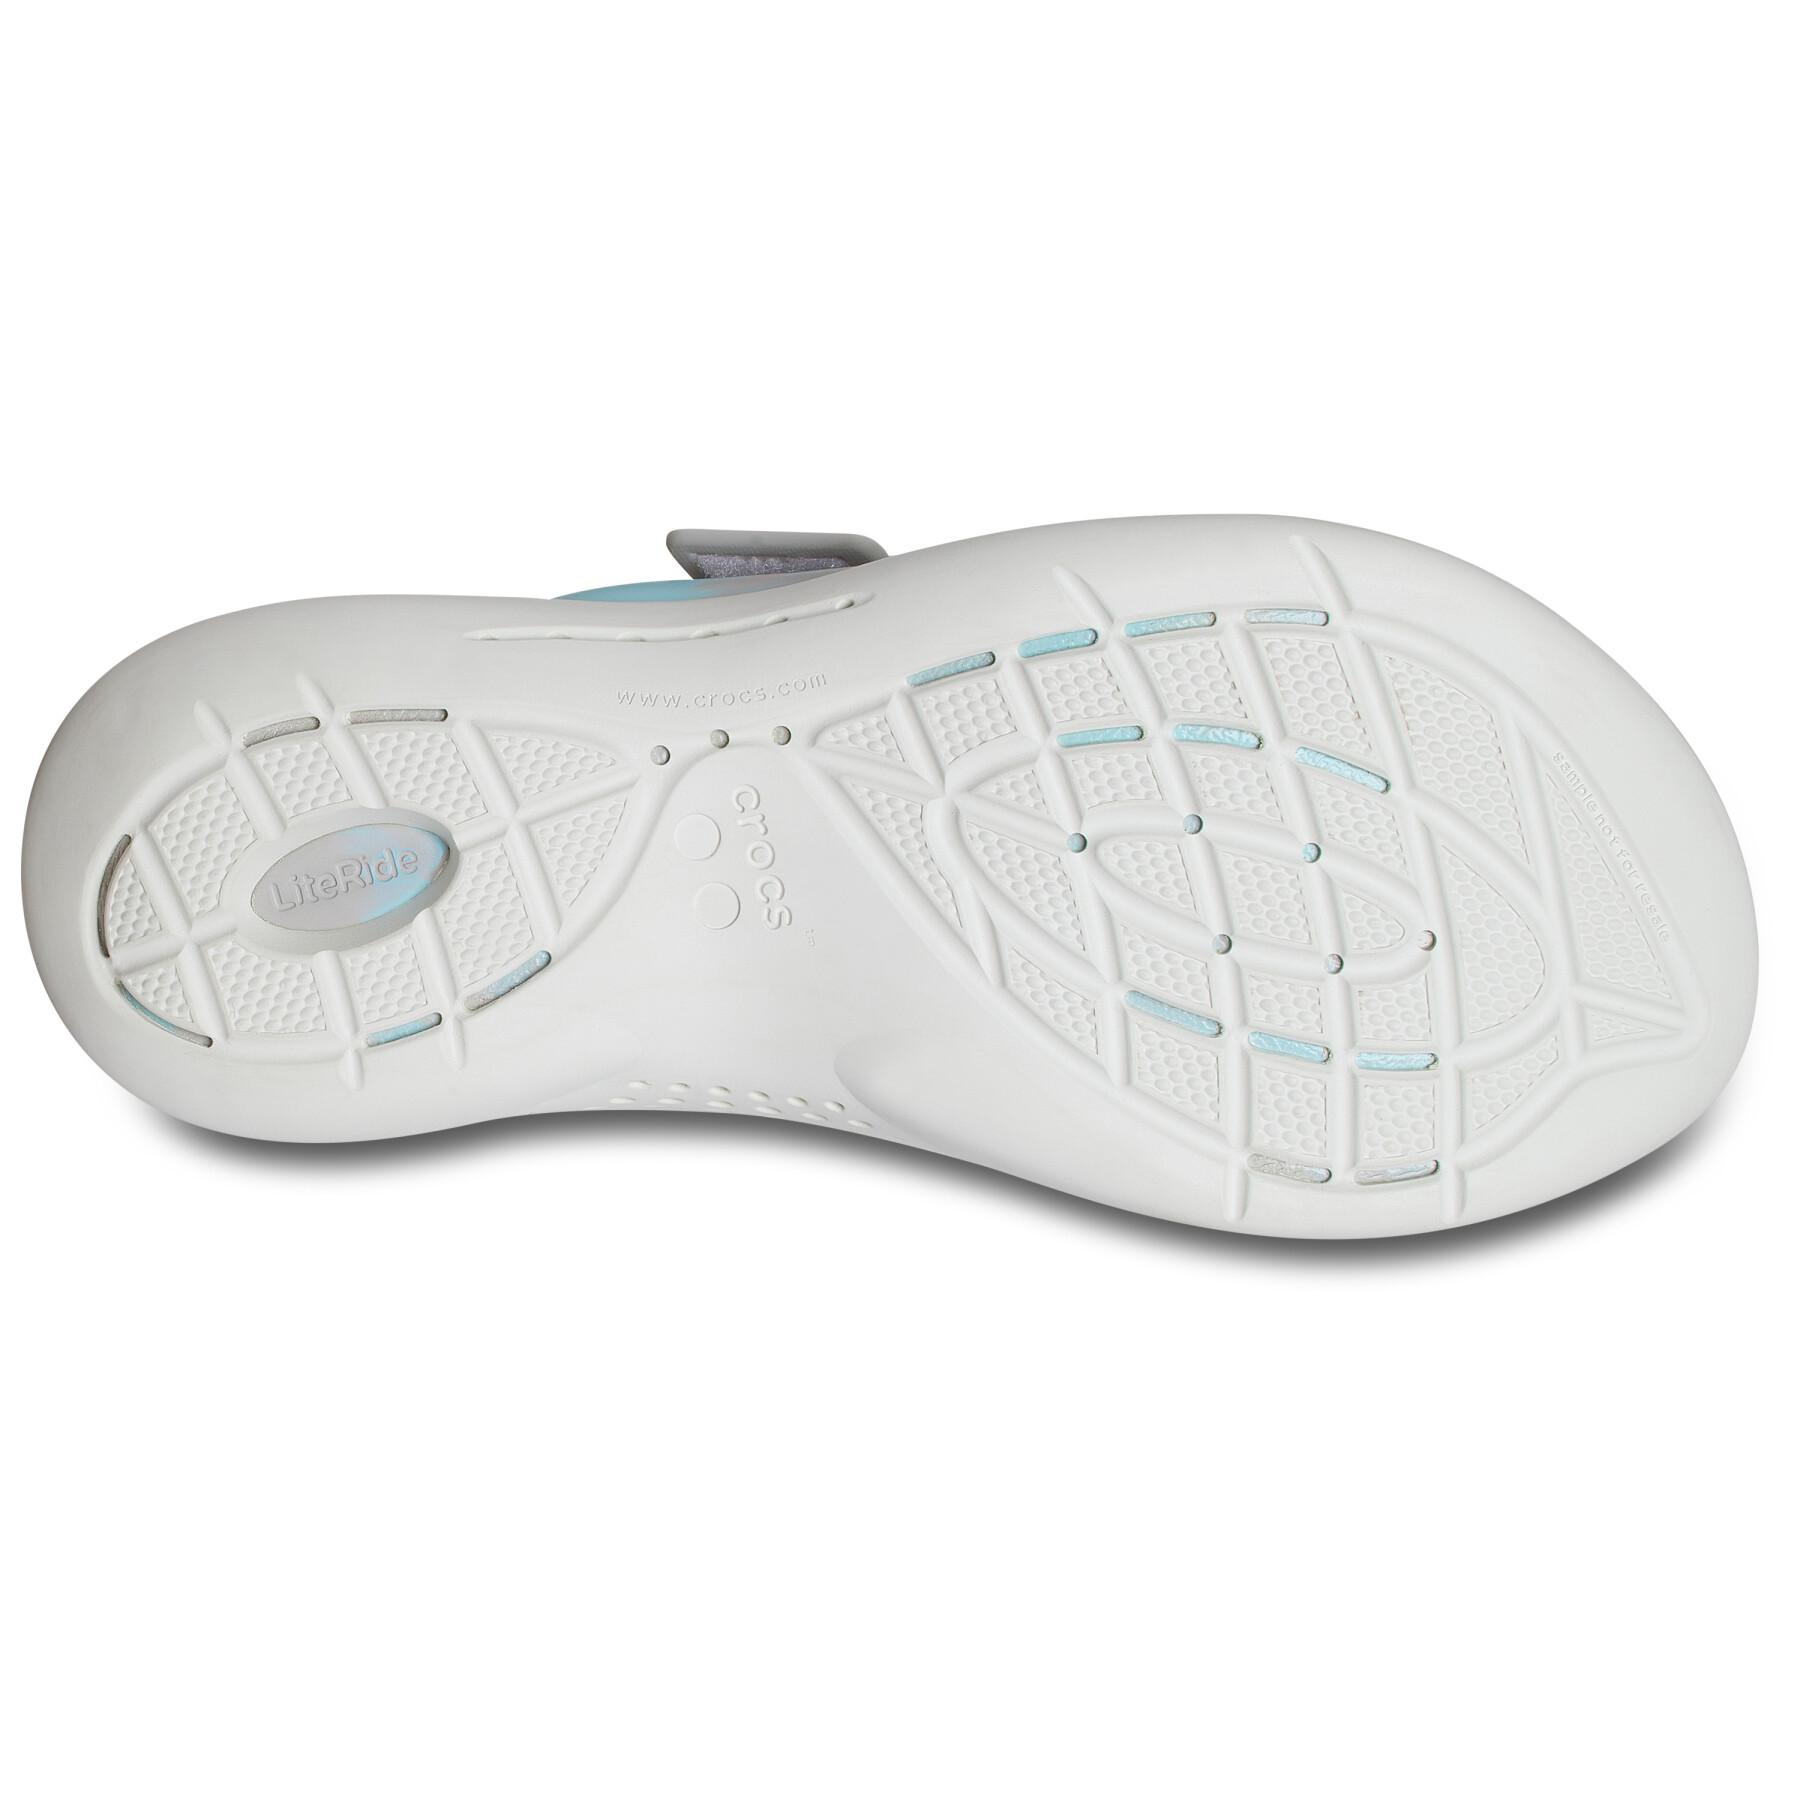 Sandalen für Frauen Crocs literide 360 marbled